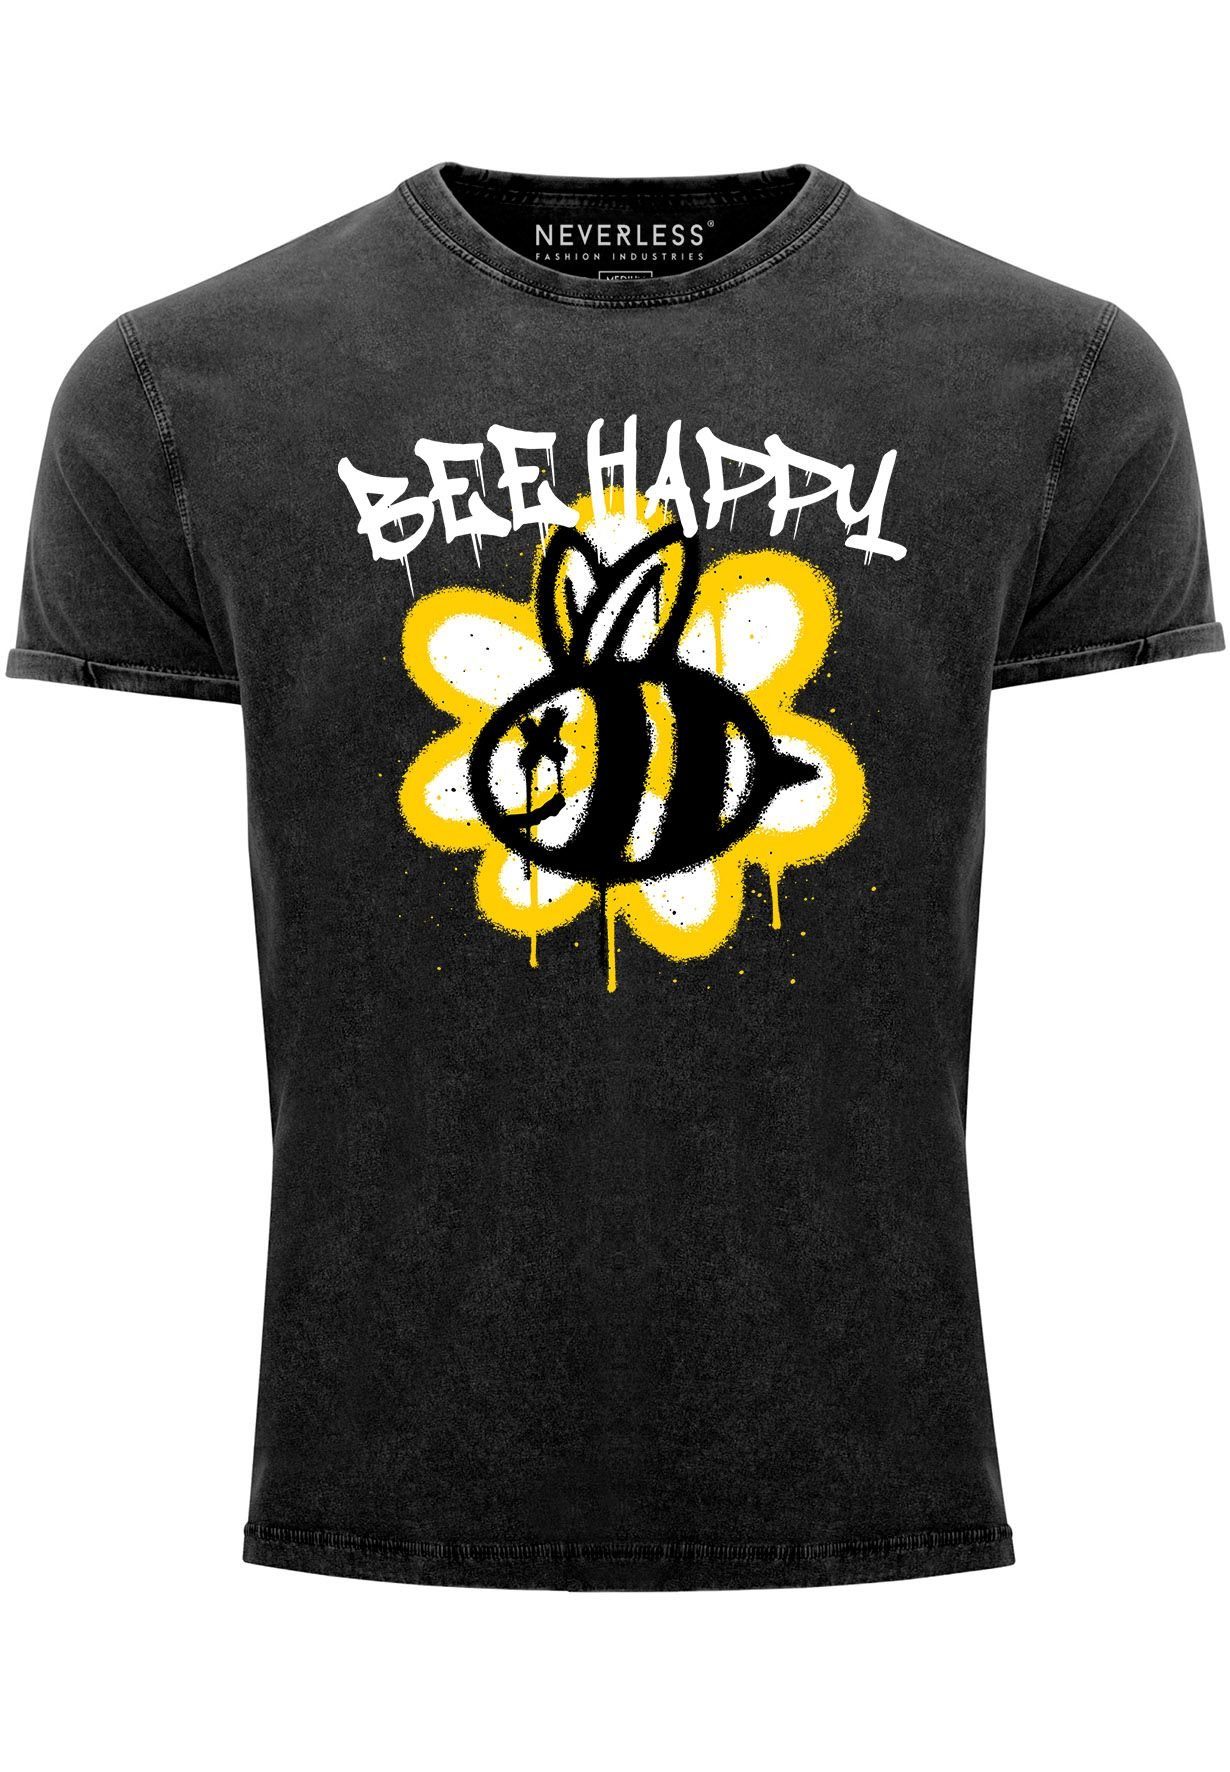 Neverless Print-Shirt Herren Vintage-Shirt Aufdruck Graffiti Print mit Bee Schriftzu schwarz Biene Happy Blume